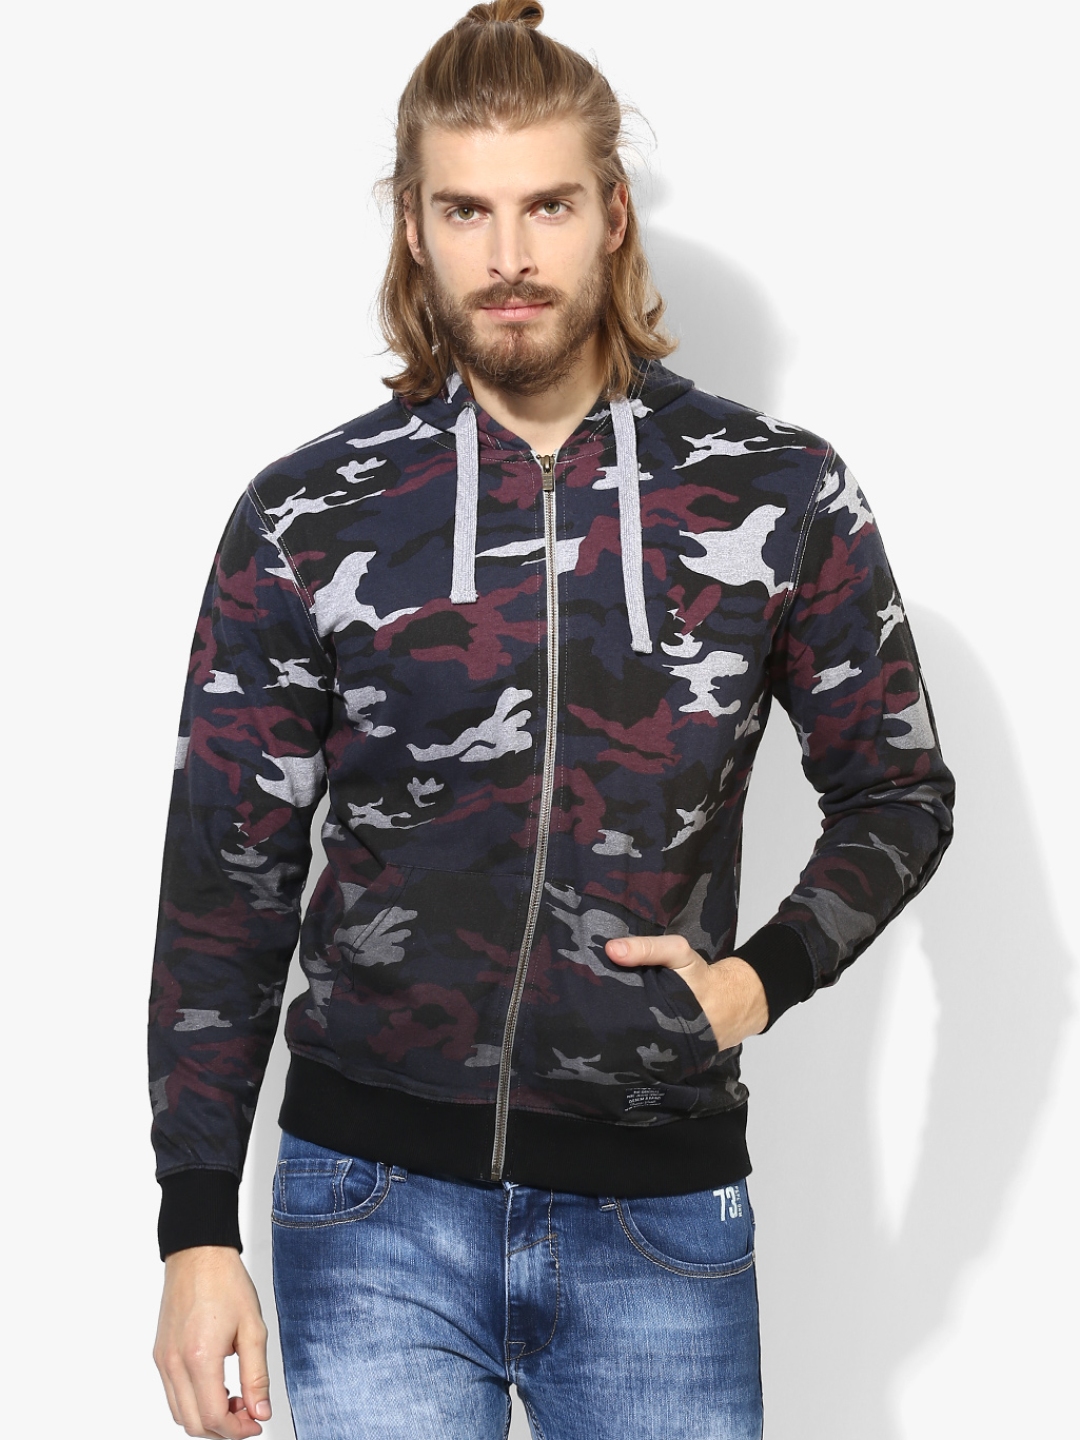 Buy Multicoloured Printed Hoodie - Sweatshirts for Men 7925797 | Myntra